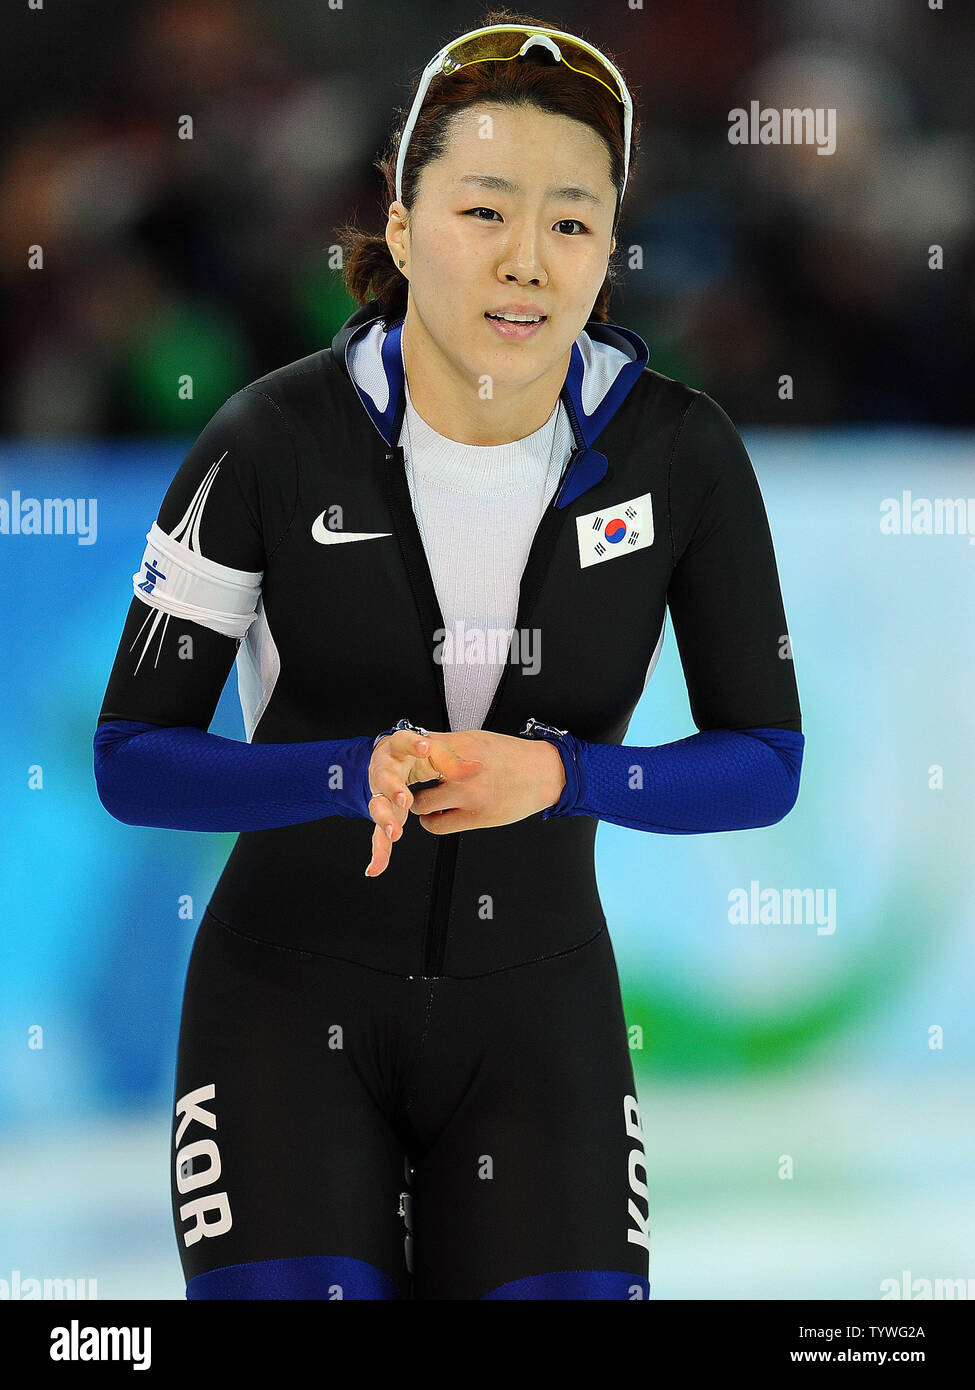 Sang-Hwa Lee de Corée commence à se rendre compte qu'elle était arrivé en tête dans les 500 mètres de patinage de vitesse à l'anneau olympique de Richmond, à Vancouver, Canada, durant les Jeux Olympiques d'hiver de 2010 le 16 février 2010. Lee a remporté la médaille d'or avec un temps combiné de 76,09. UPI/Roger L. Wollenberg Banque D'Images